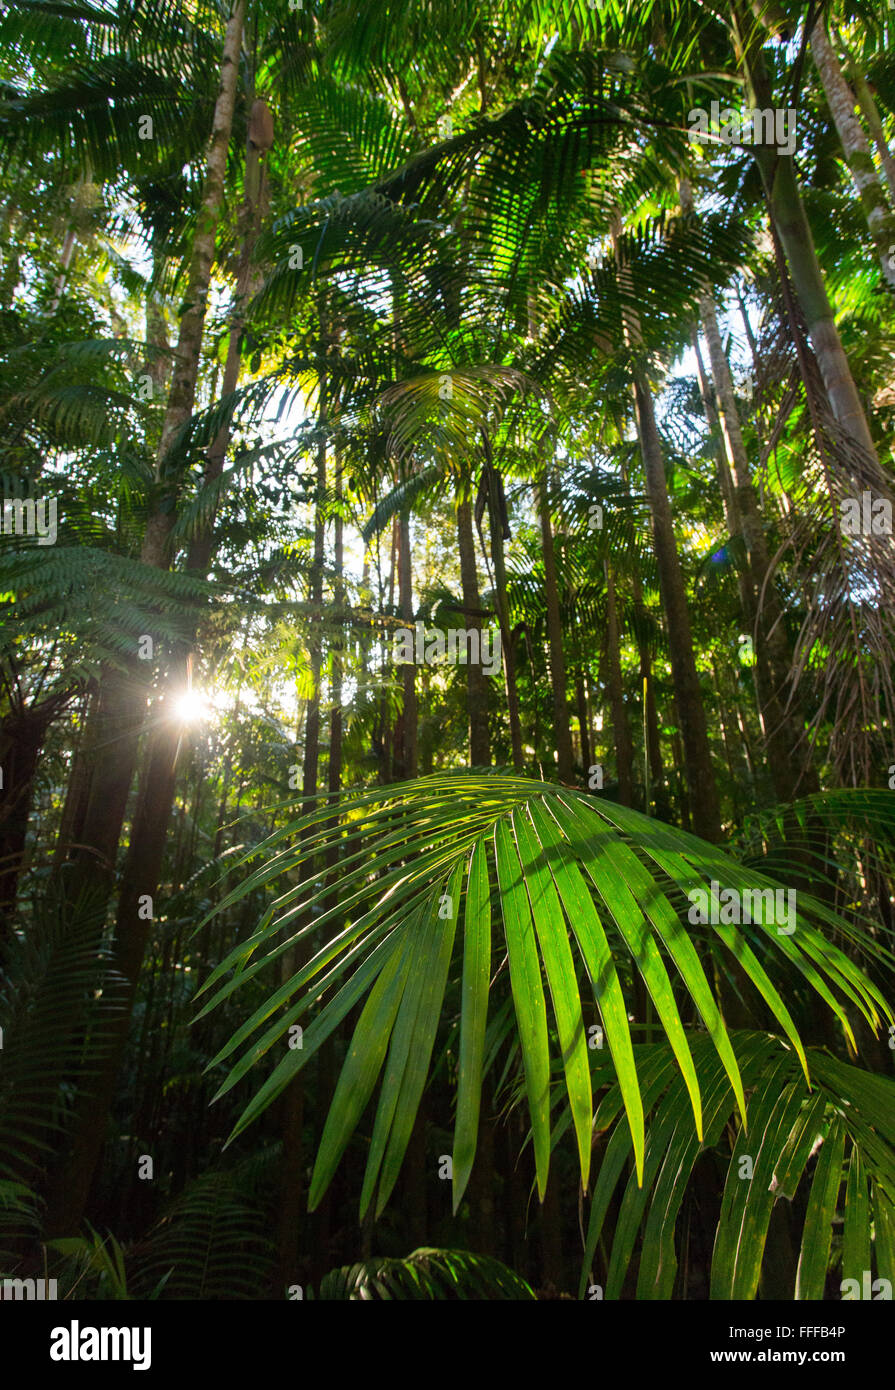 Le palme in una lussureggiante foresta pluviale subtropicale, tisana National Park, NSW, Australia Foto Stock